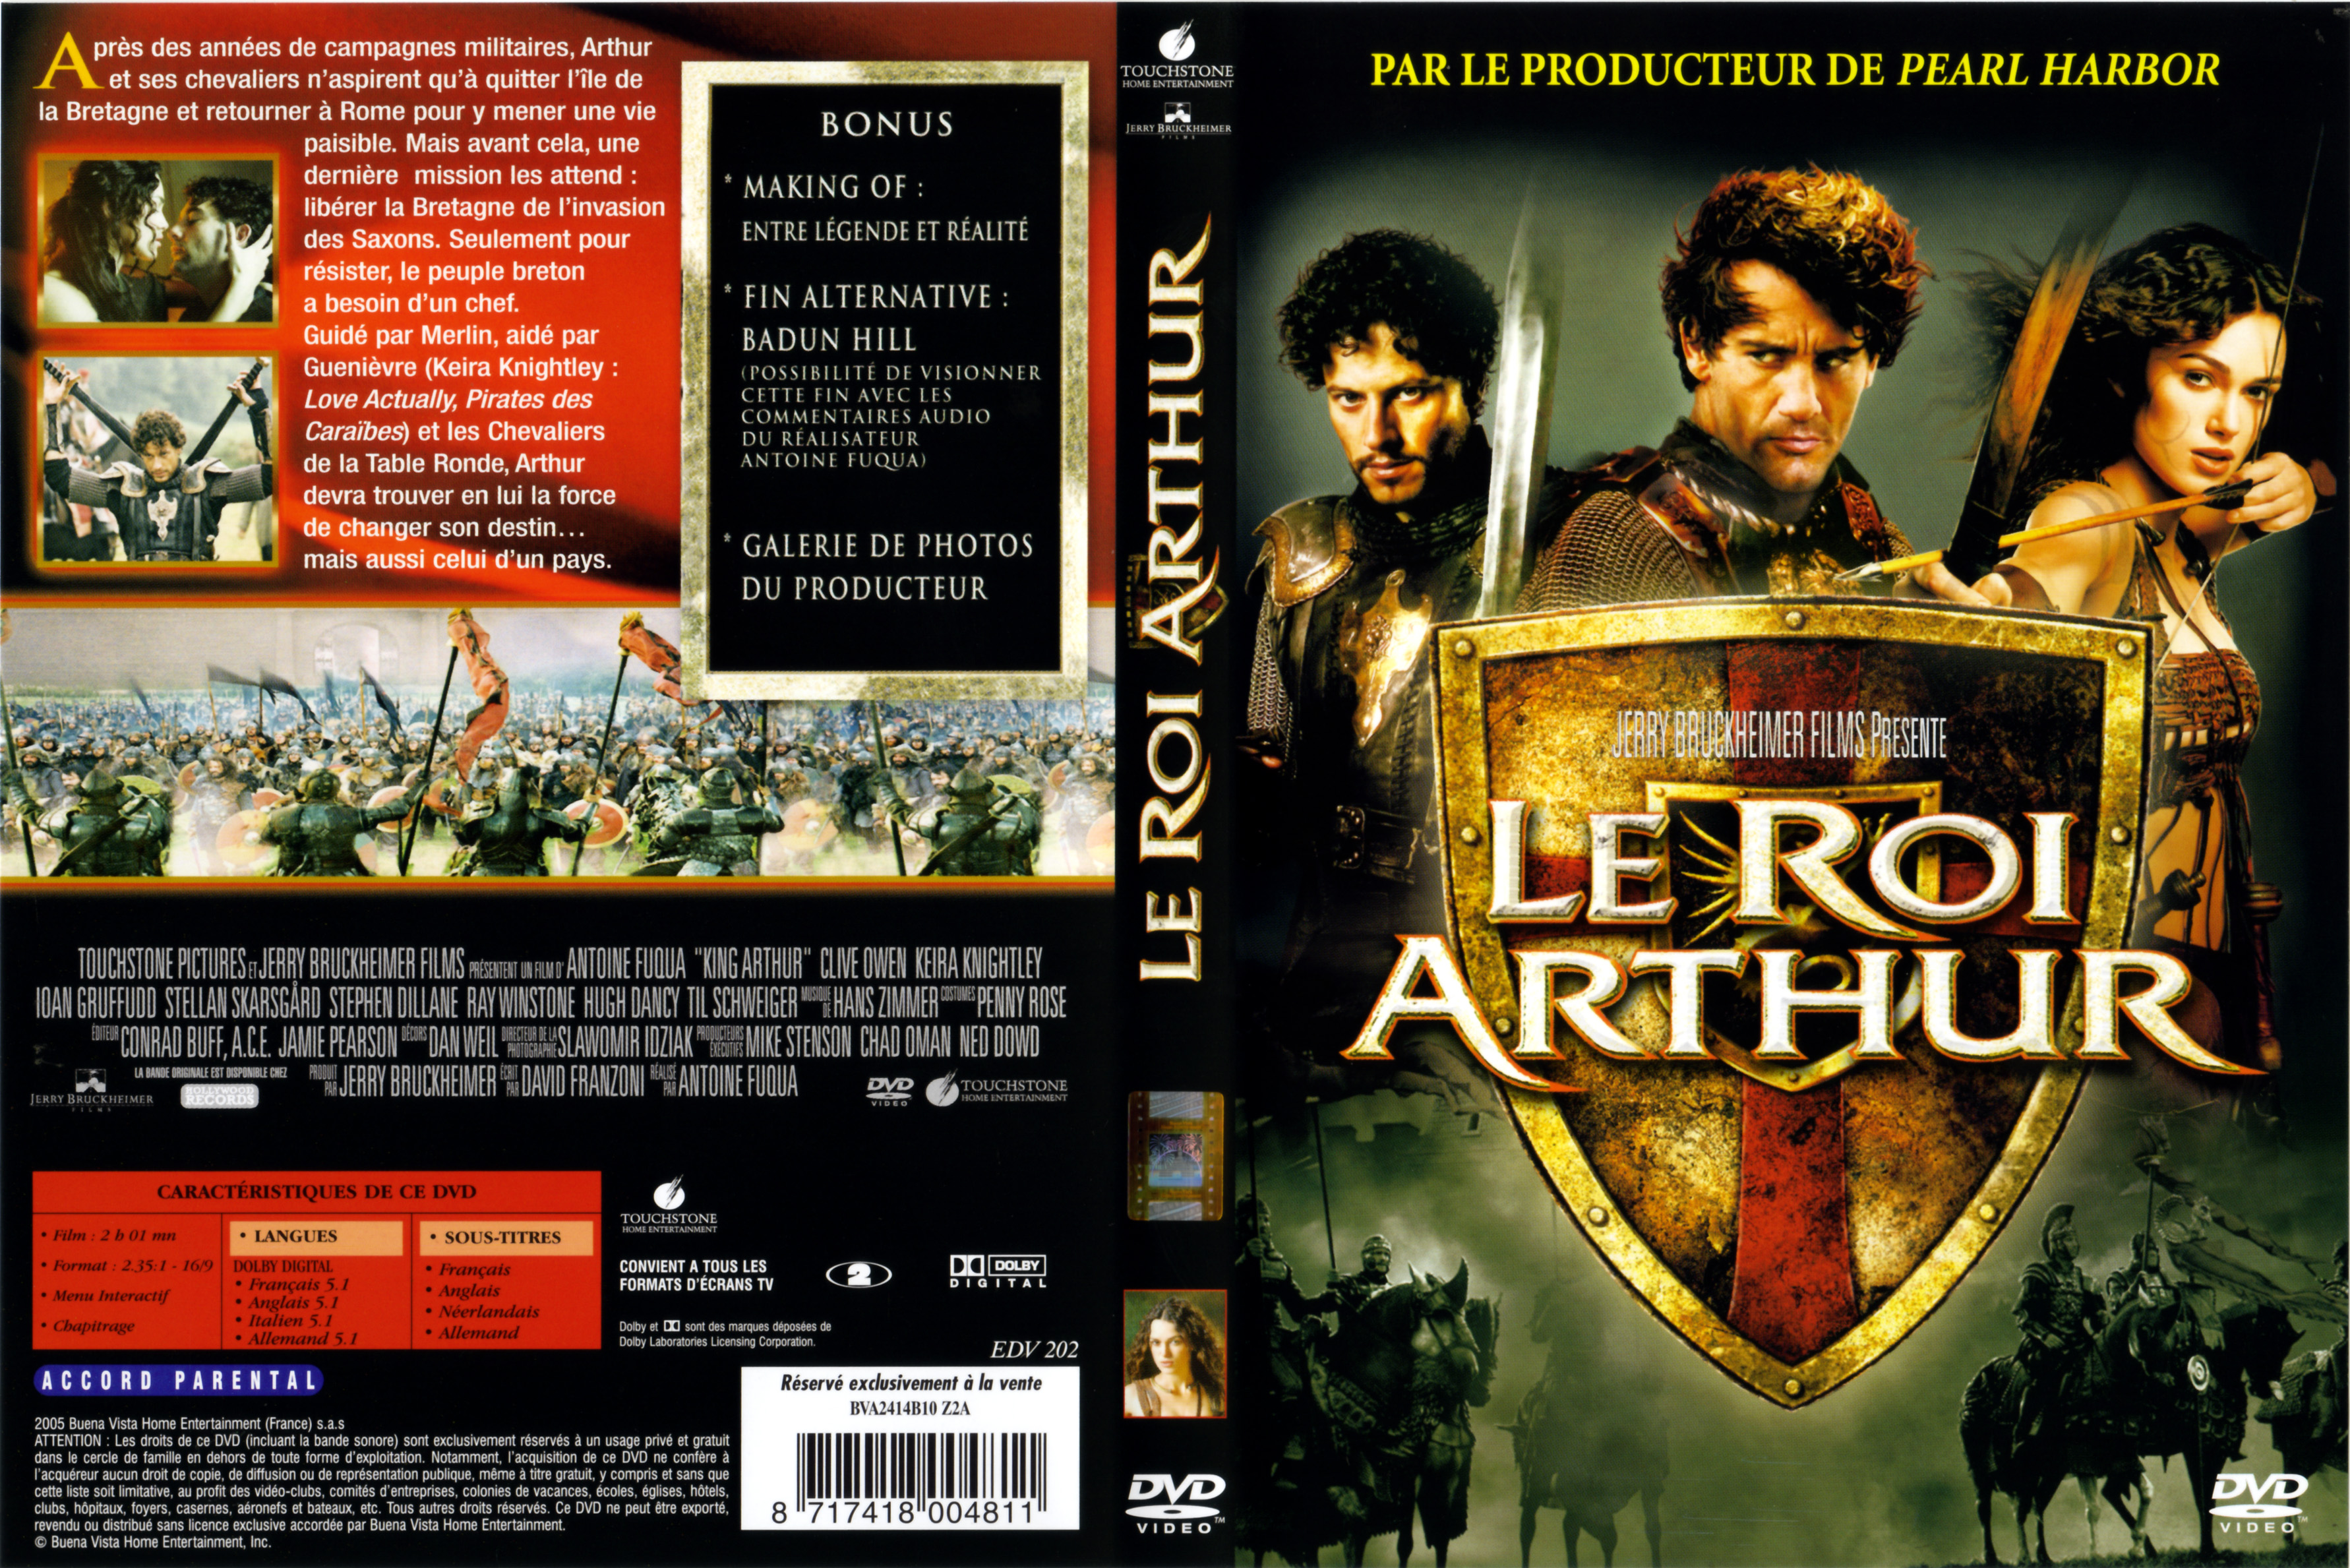 Jaquette DVD Le roi Arthur